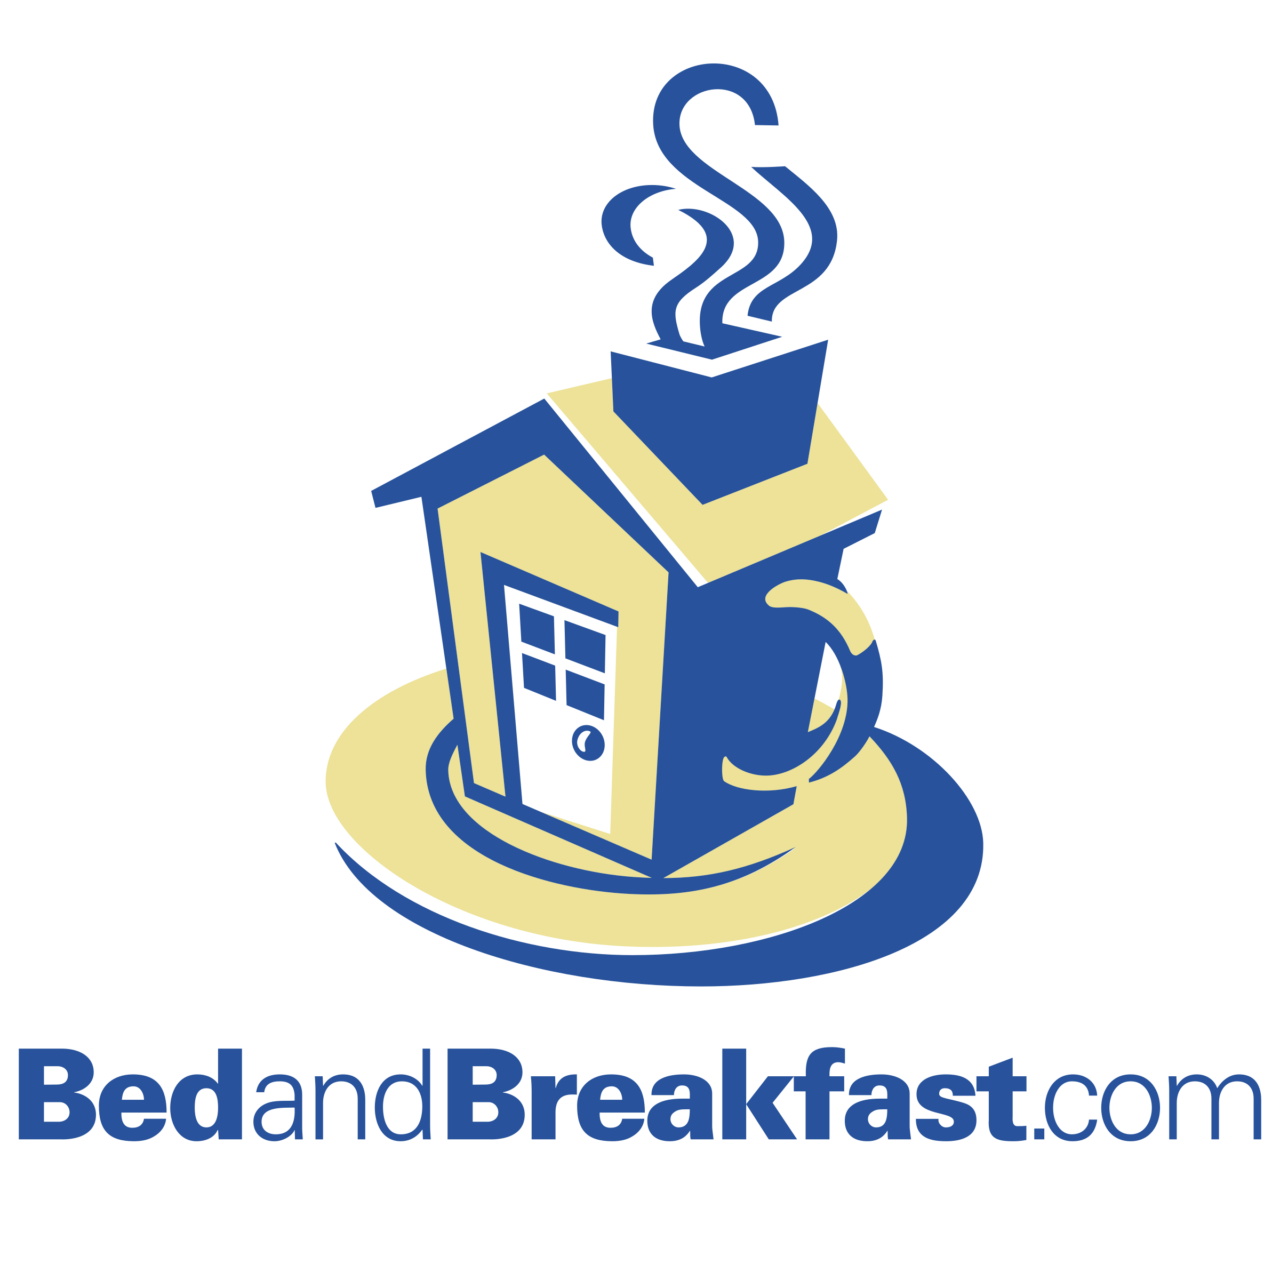 BedandBreakfast.com-logo